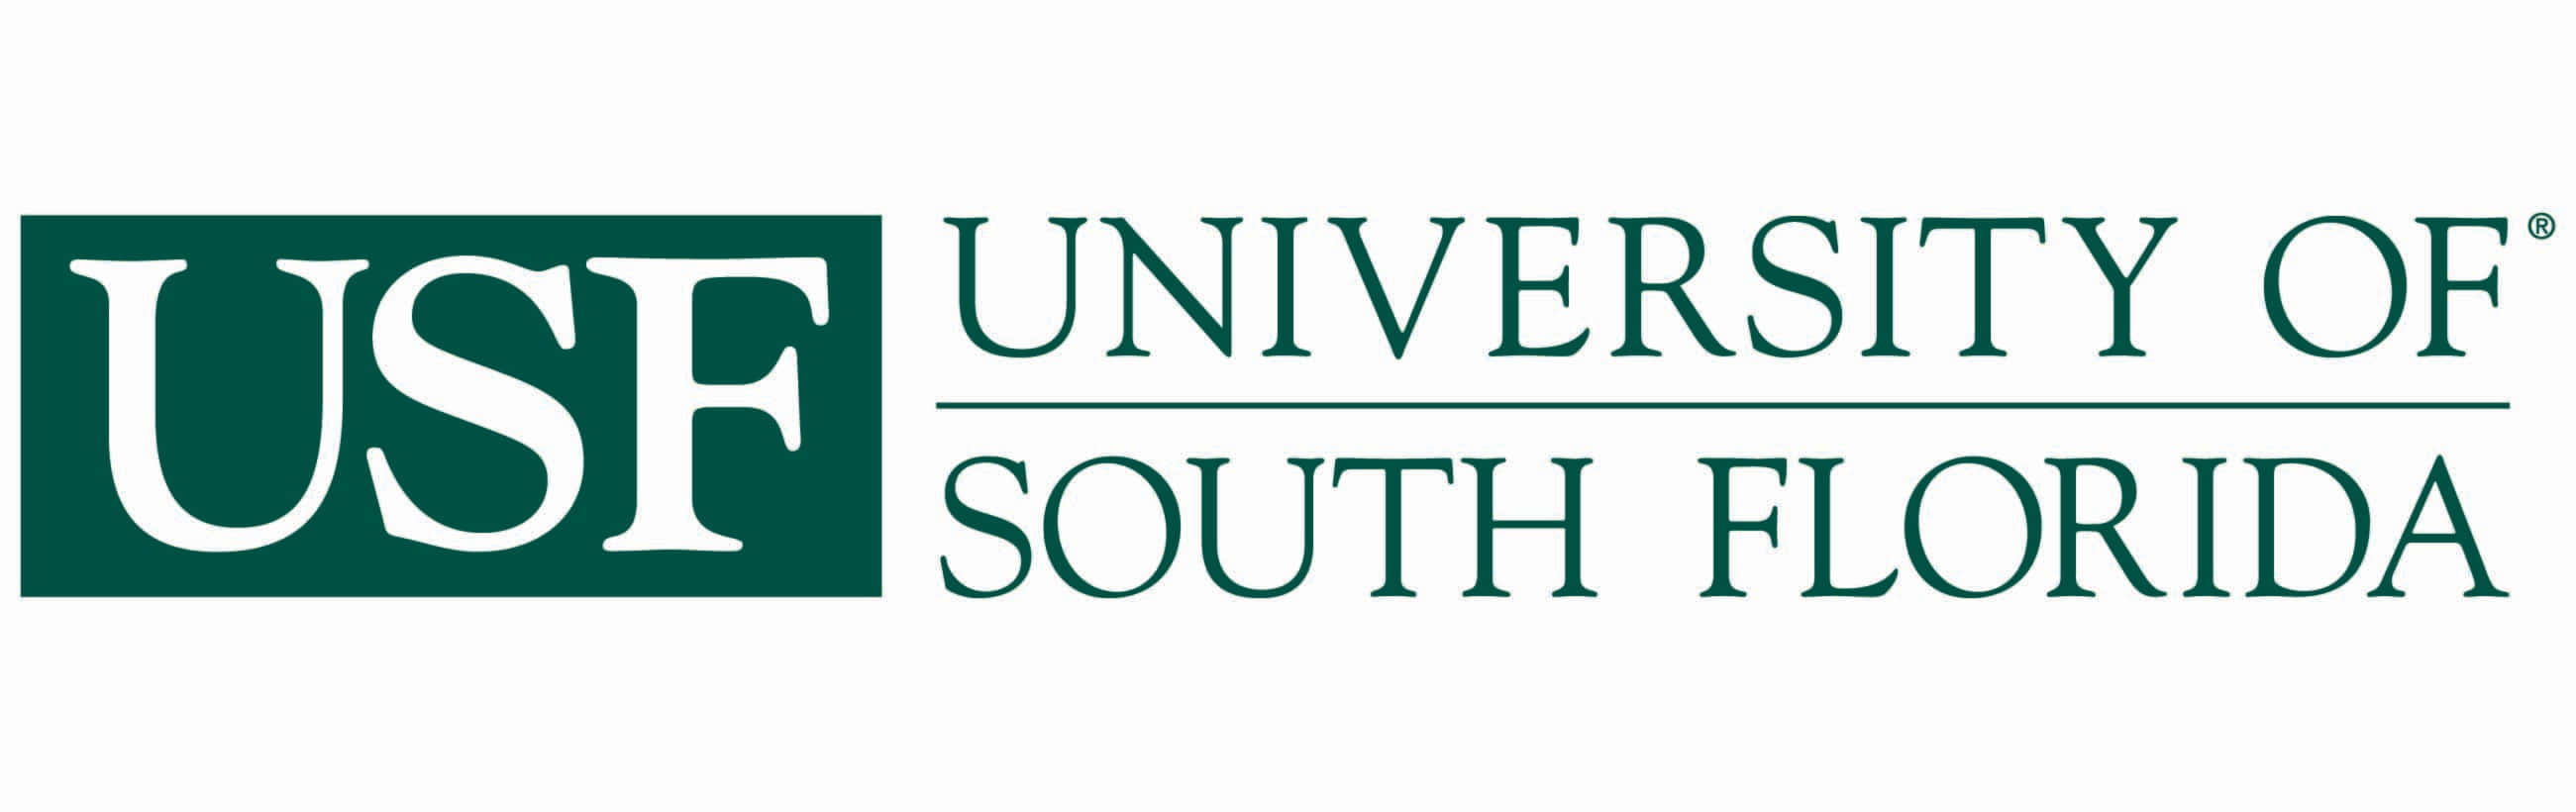 Universitätvon South Florida Logo In Weiß Wallpaper